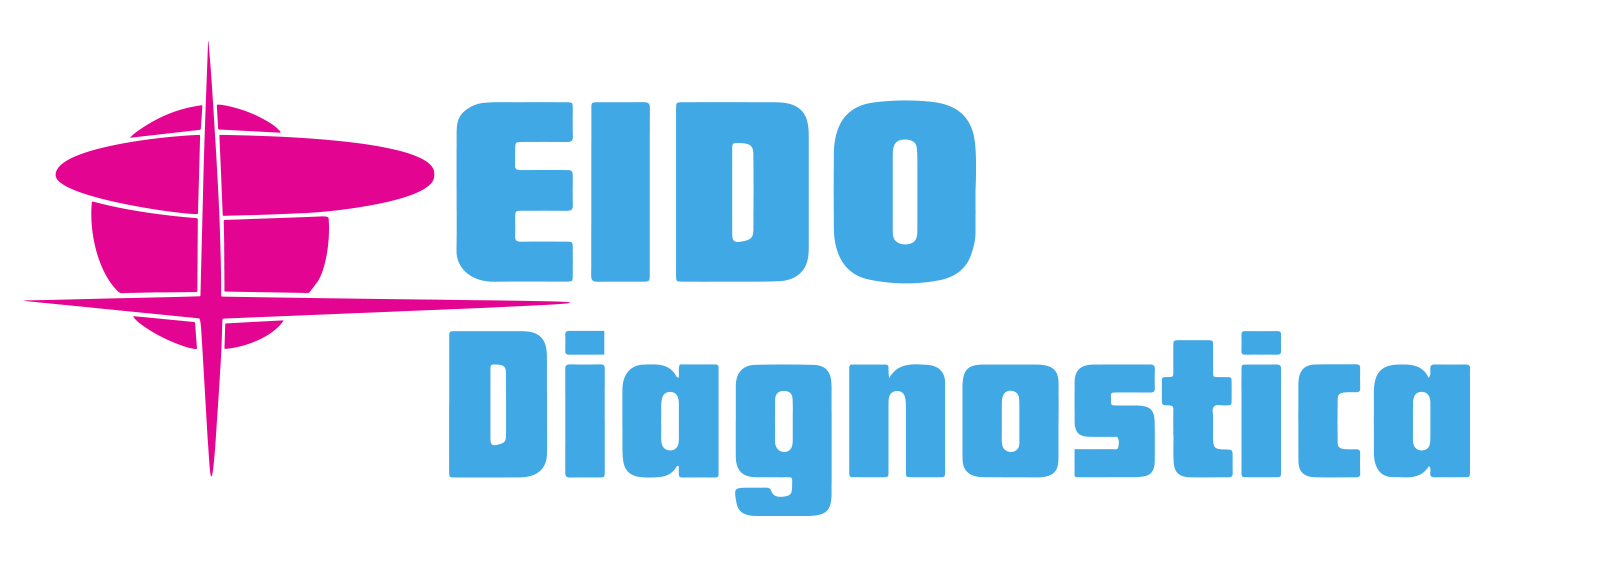 Eido Diagnosica a Viareggio per la tua Risonanza Magnetica, Tac, Ecografia, Radiologia